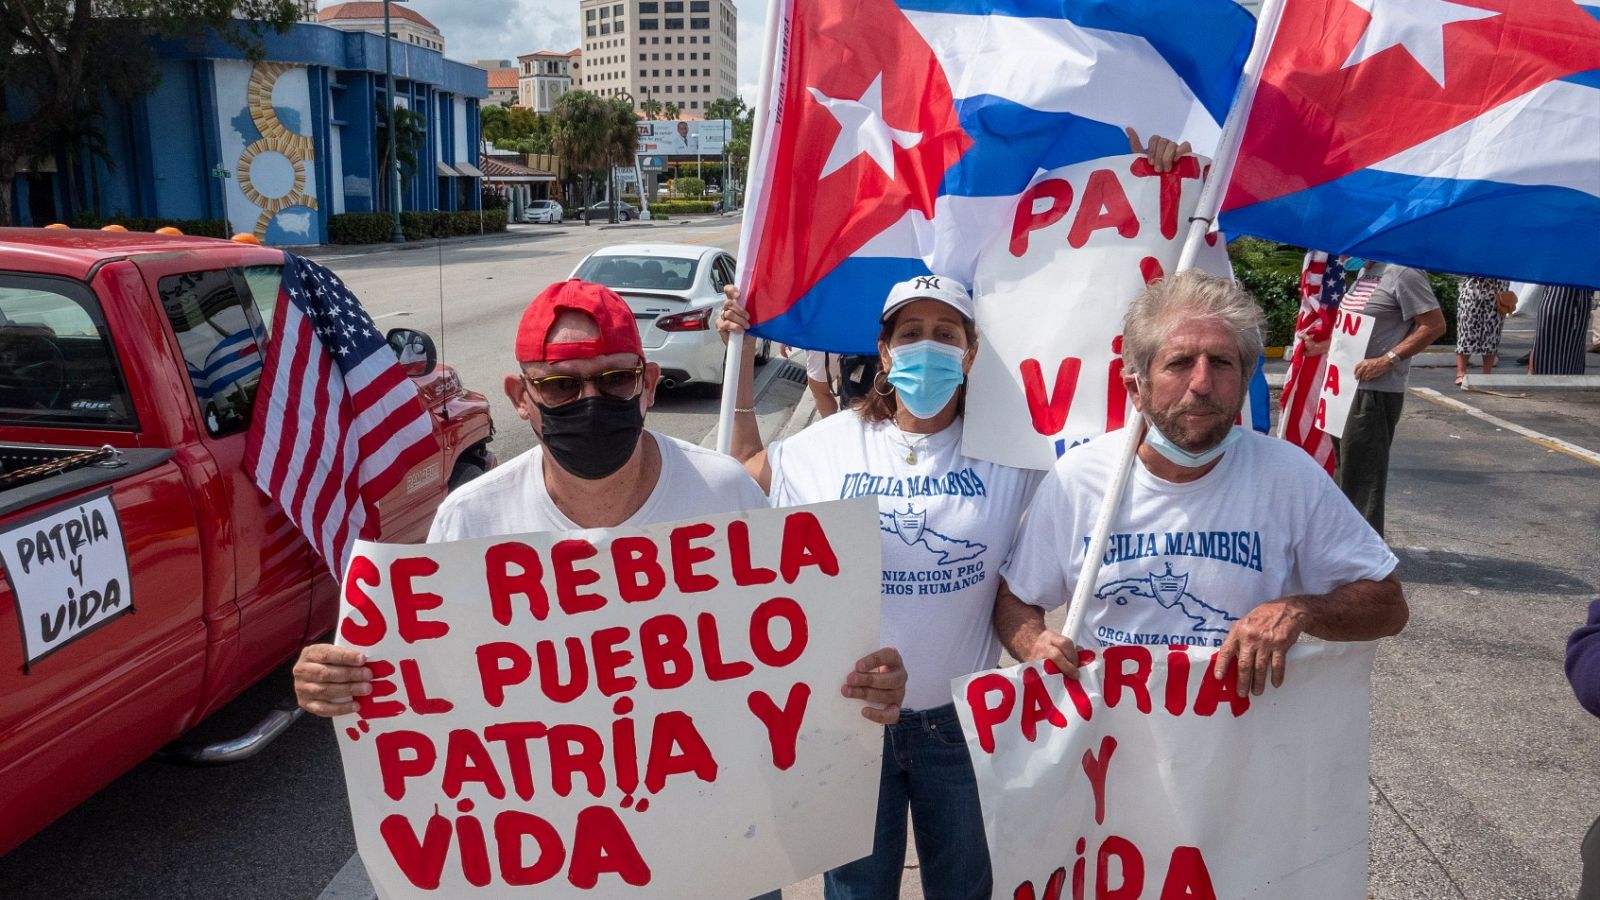 Cuba | 'Patria y vida', una crítica al régimen castrista que arrasa en redes 